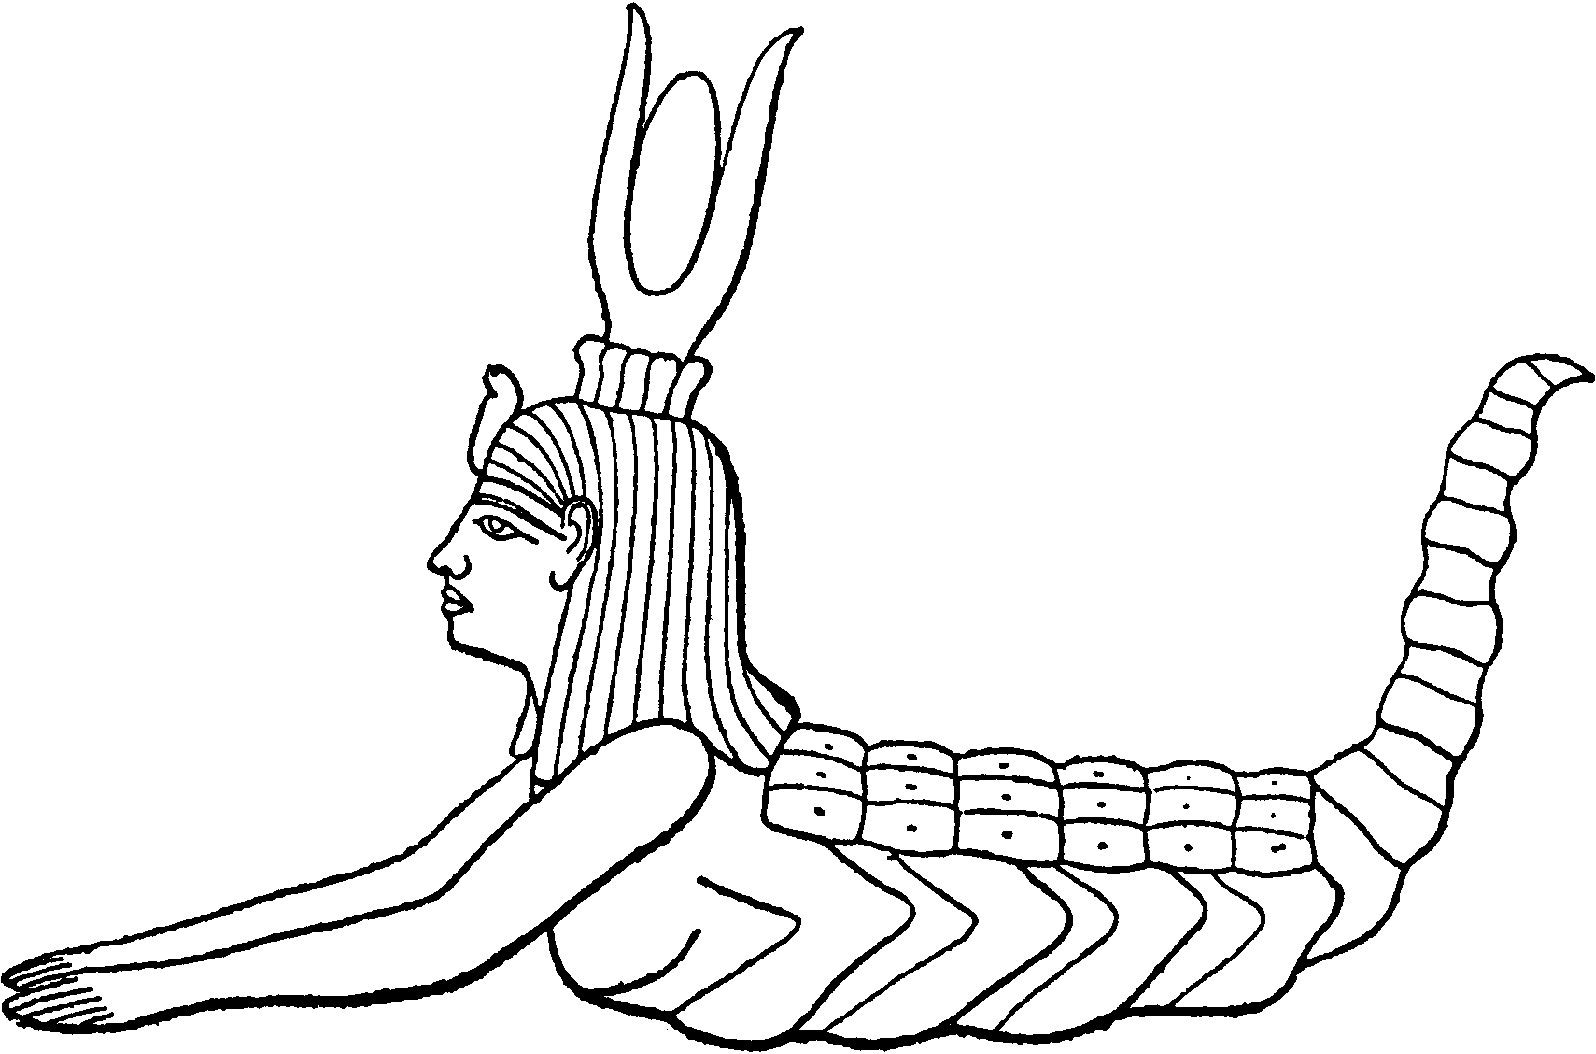 Богиня Серкет, или Селкет (обе с рогами и диском)